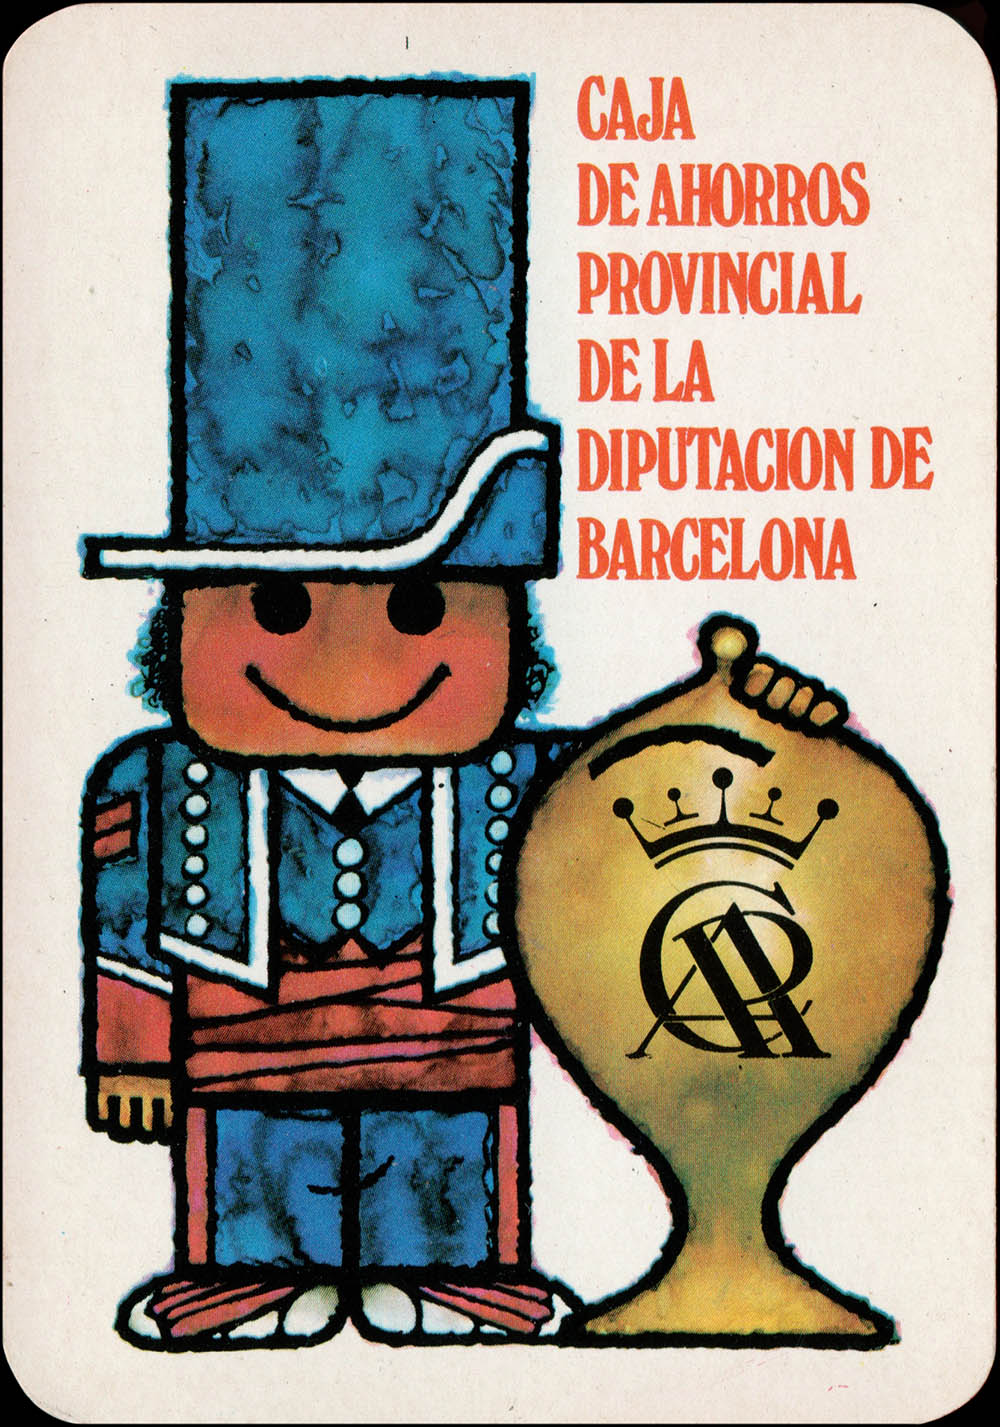 Caja de Ahorros Provincial de la Diputacion de Barcelona